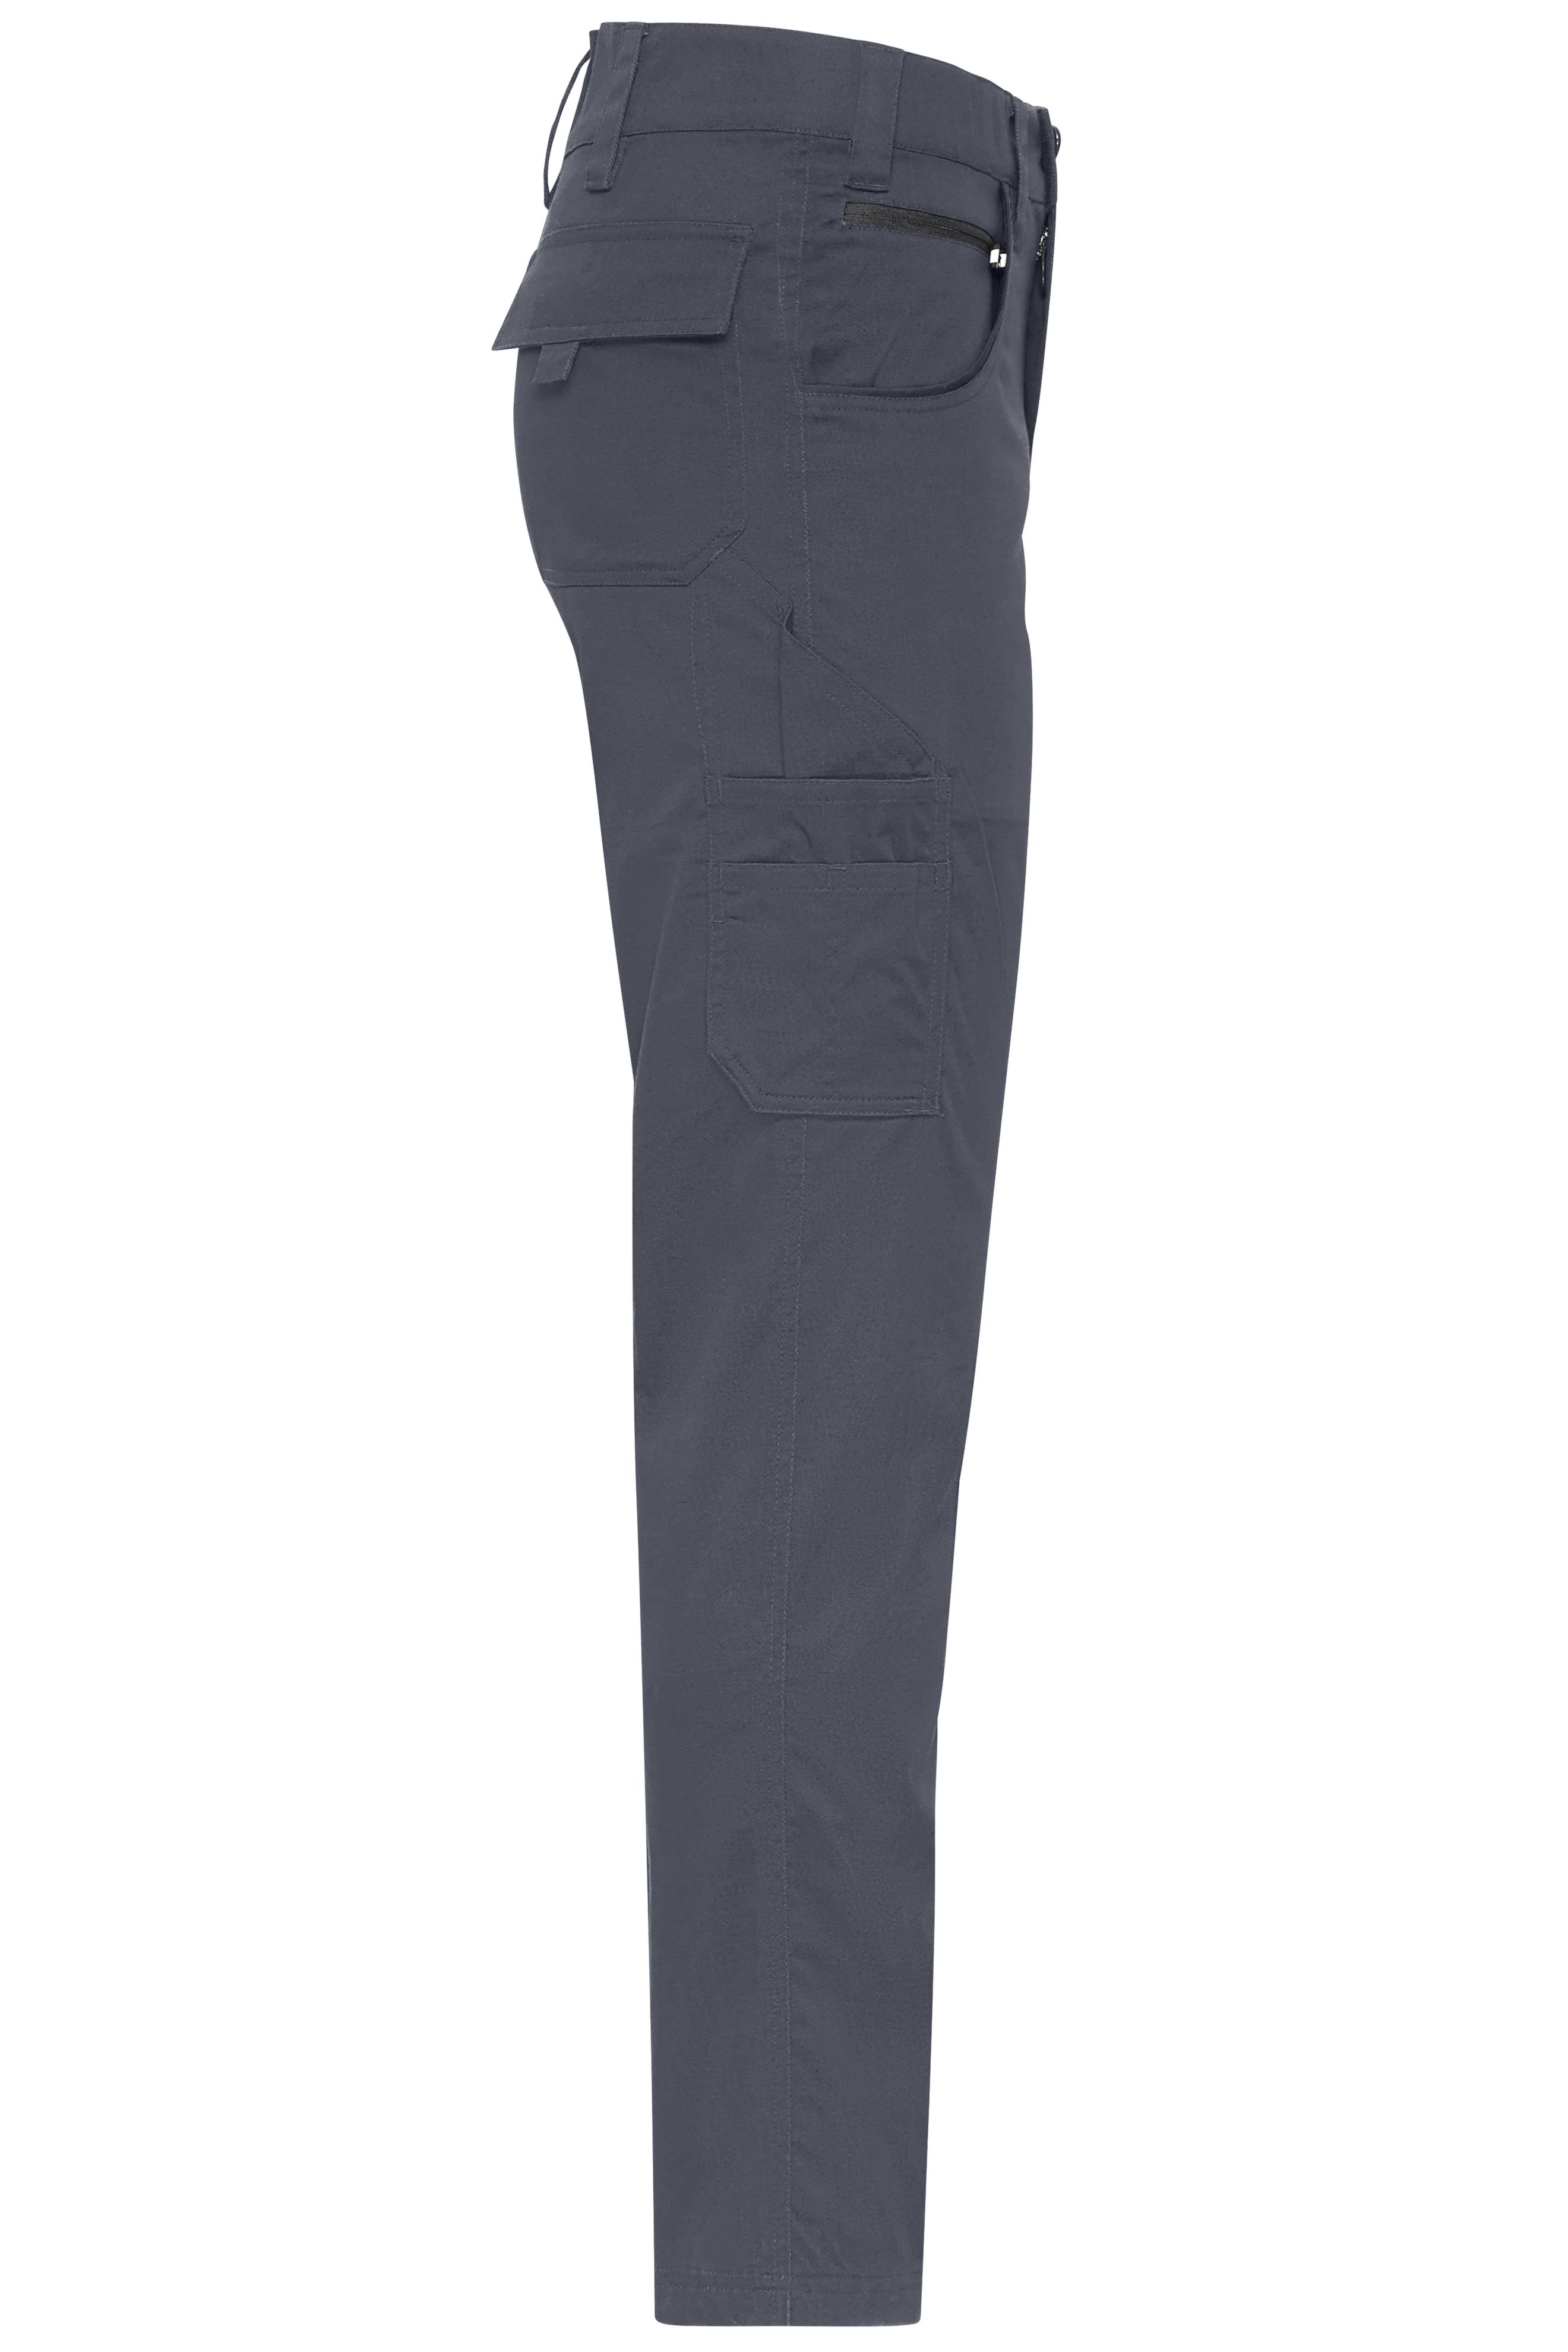 Workwear-Pants light Slim-Line JN1858 Leichte, robuste Arbeitshose in schmaler Schnittführung mit funktionellen Details